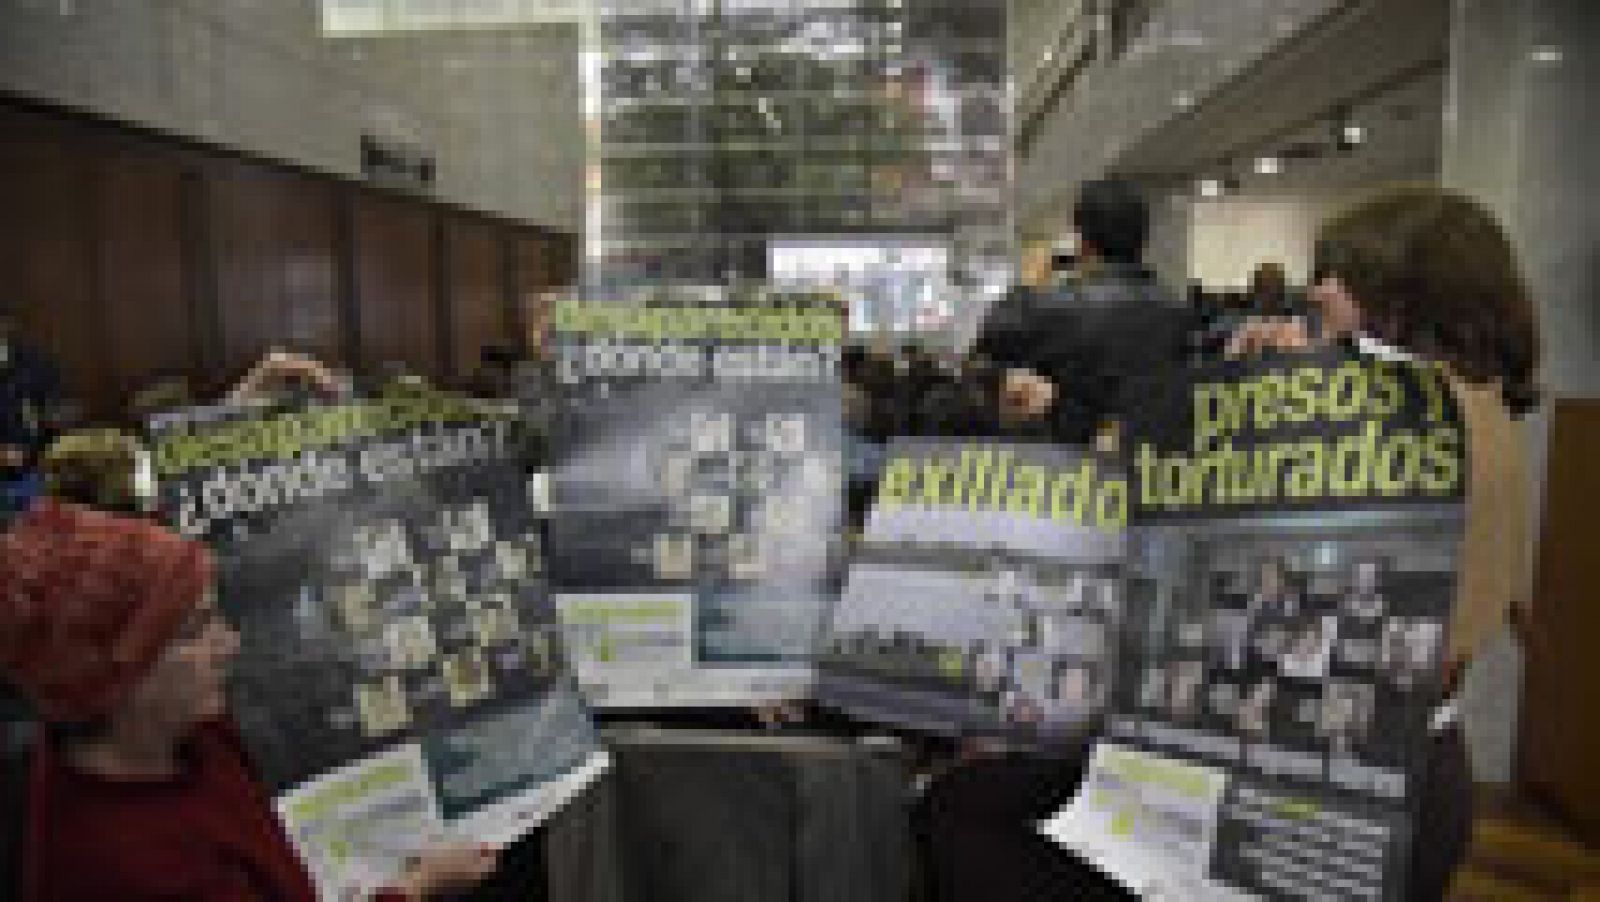 Condenan al exdictador argentino Bignone a 20 años de prisión por el Plan Cóndor